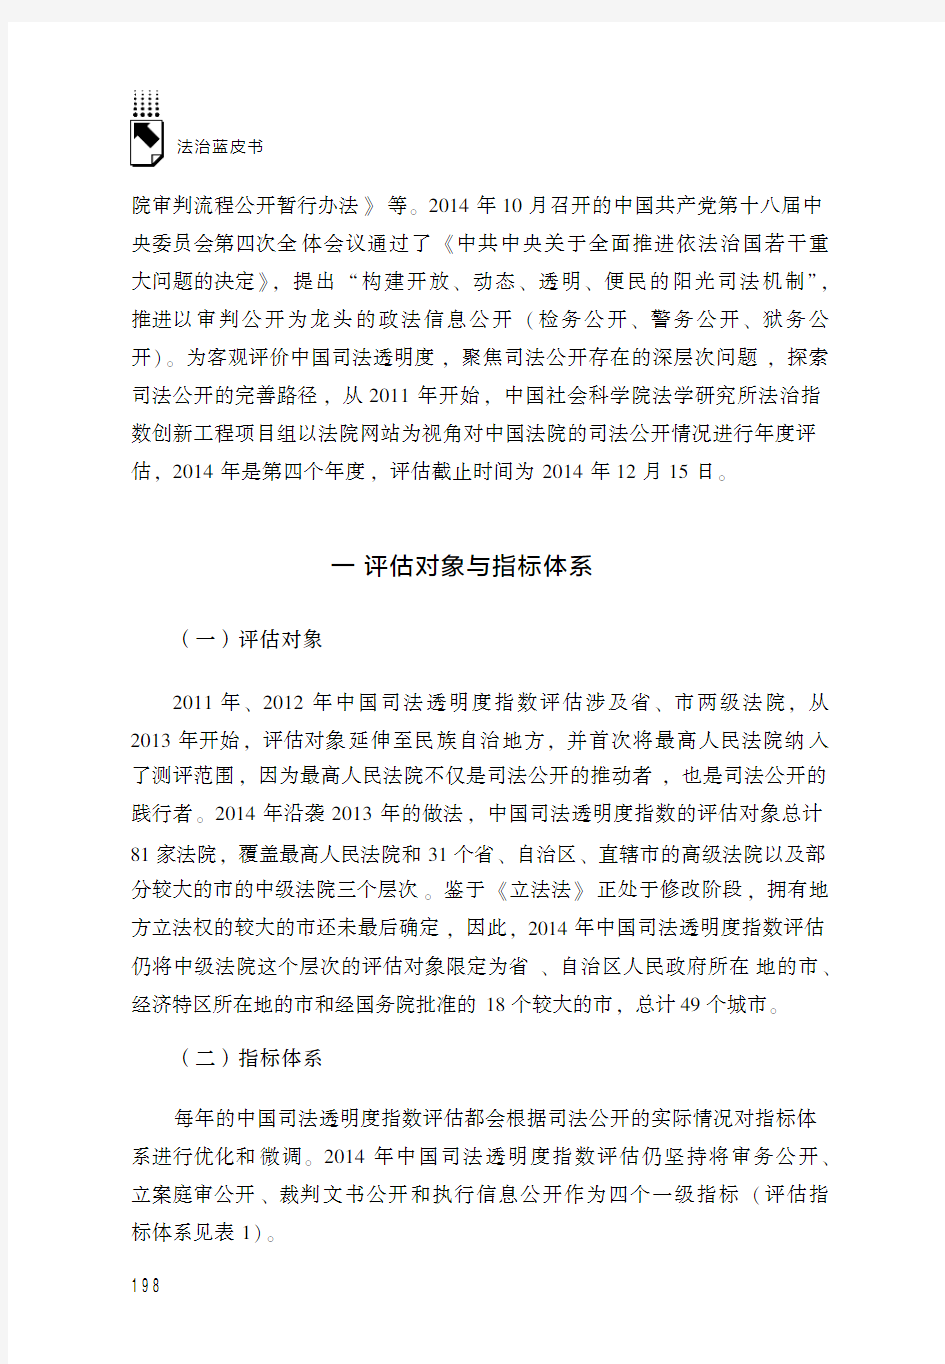 中国司法透明度指数报告(2014)——以法院网站信息公开为视角